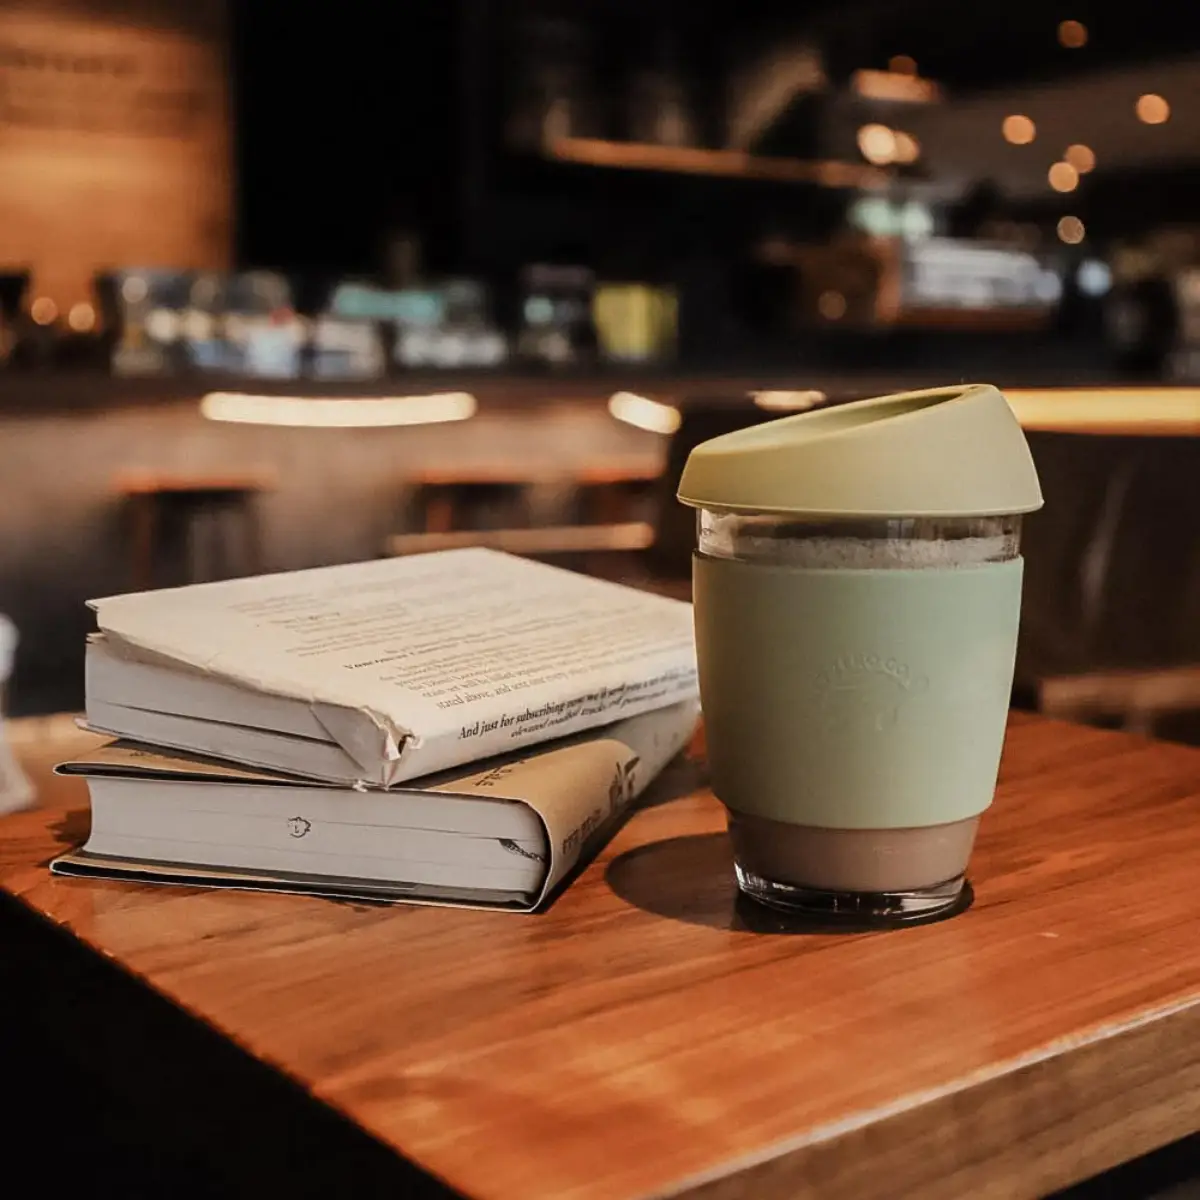 wie kocht man kaffee mit einer filtermaschine guten kaffee borosilikat glasse kaffee mit deckel auf tisch mit buechern